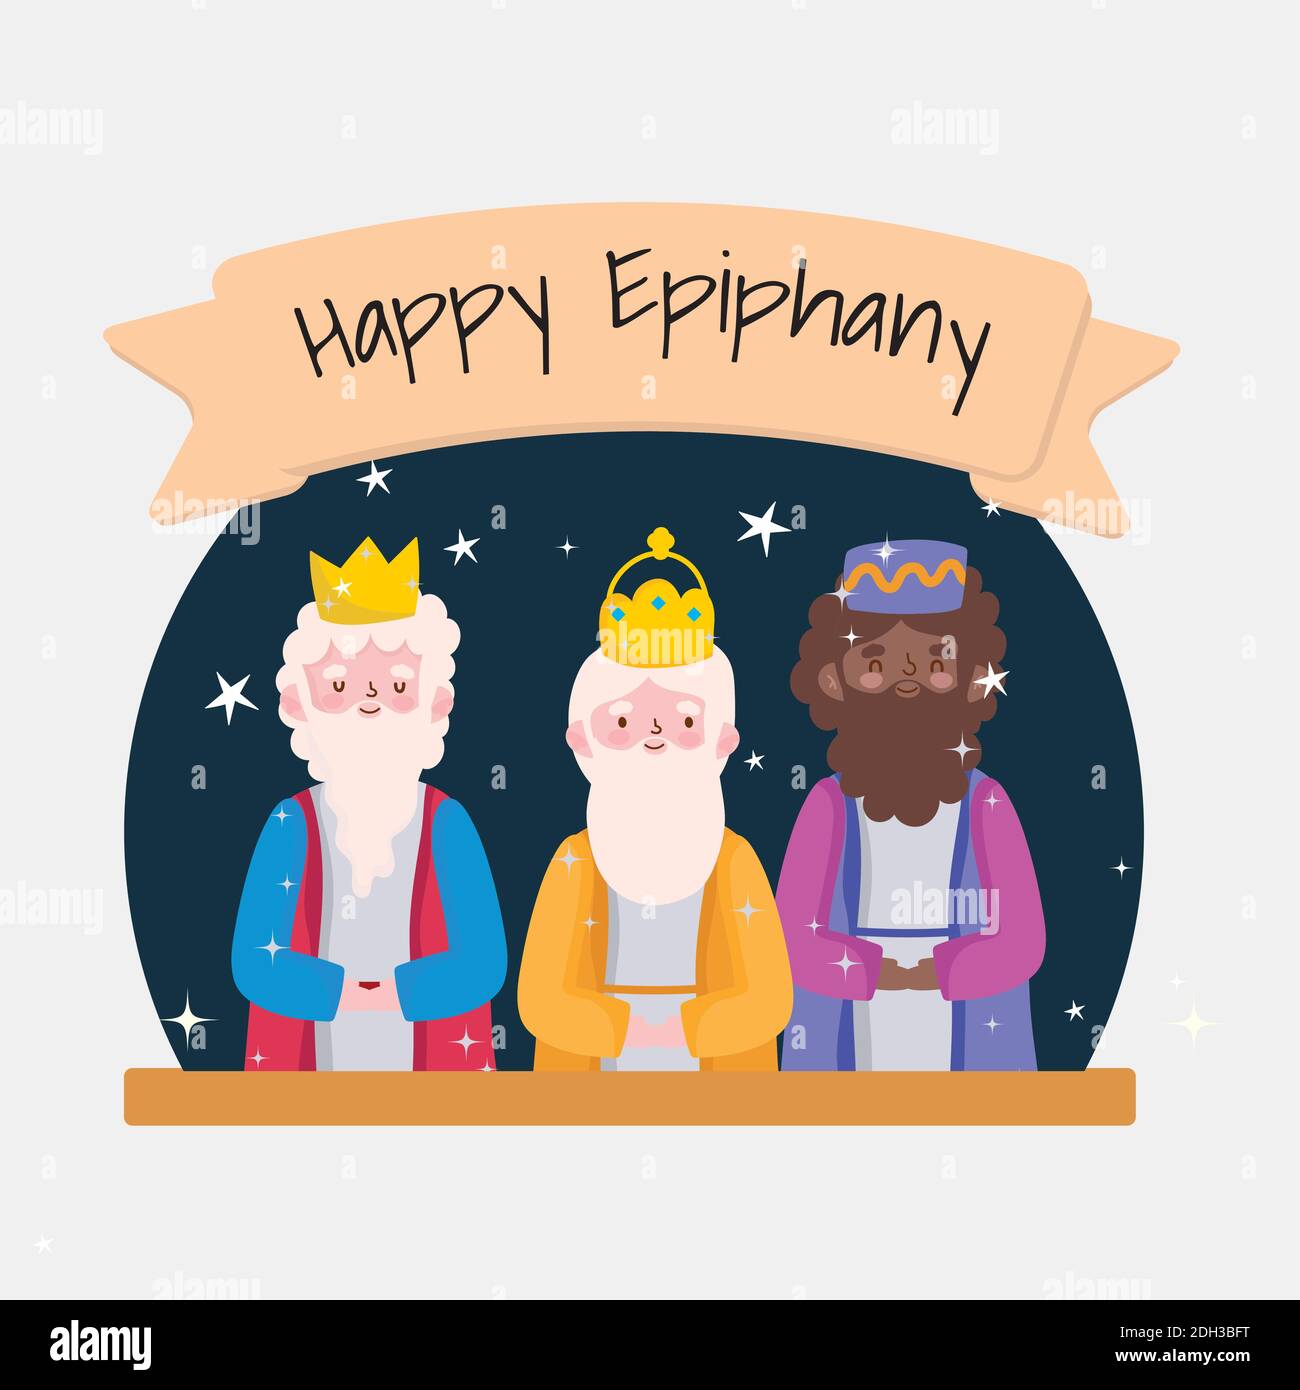 Feliz Día de los Reyes Magos! Have a blessed Epiphany Day to all